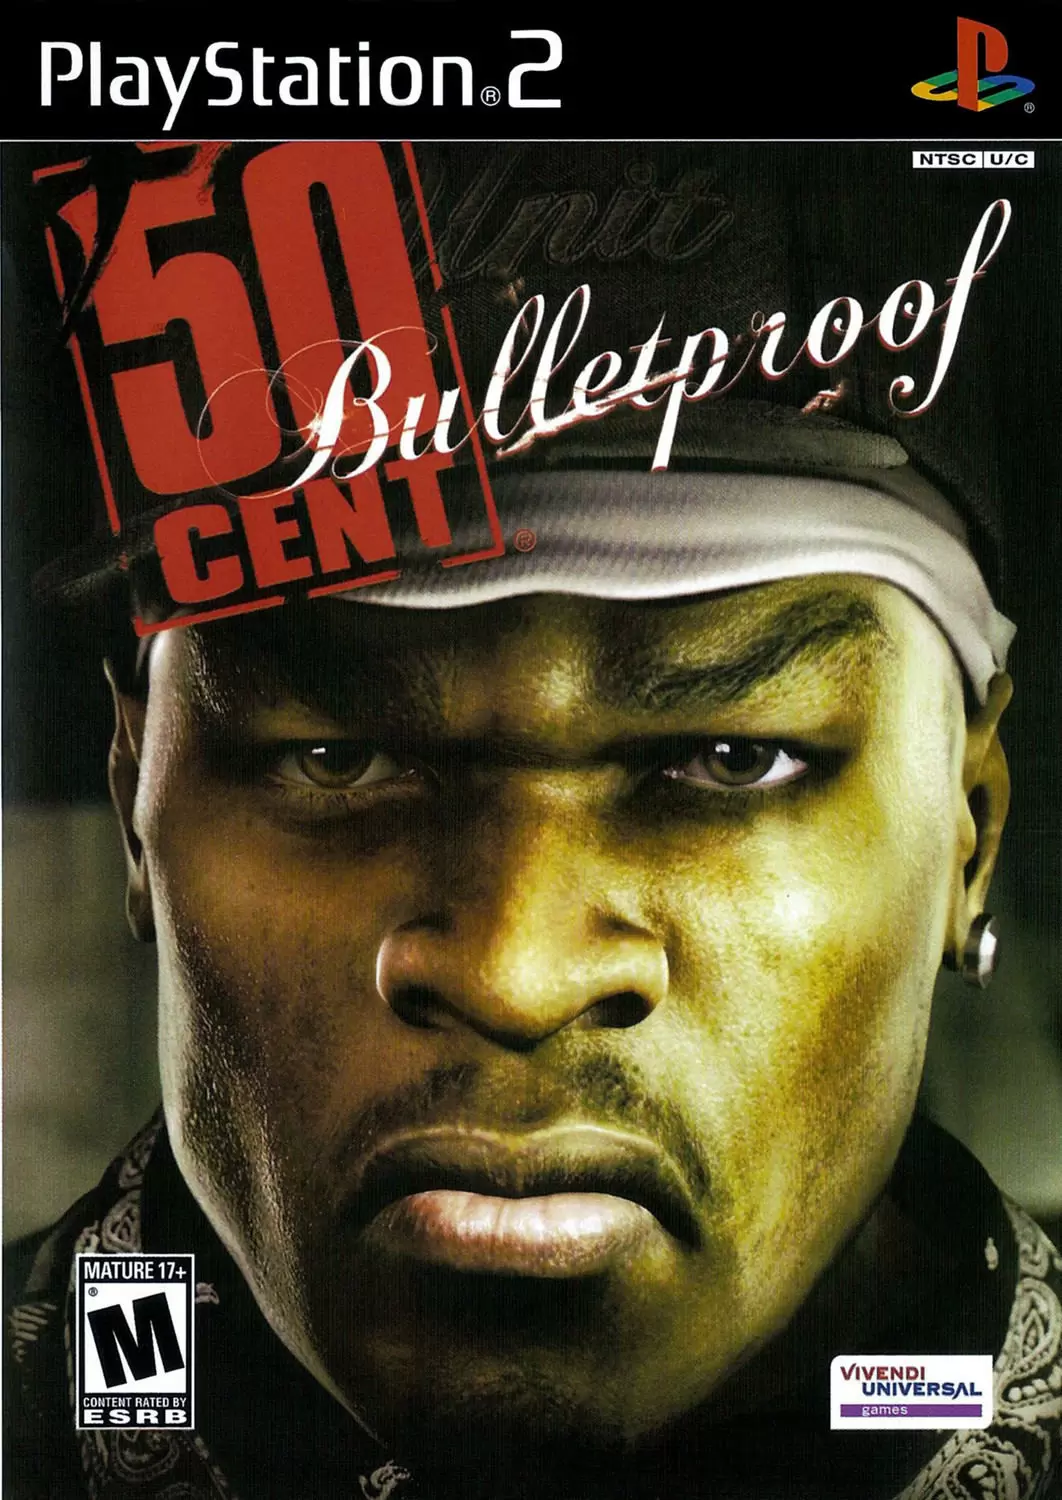 PS2 Games - 50 Cent: Bulletproof